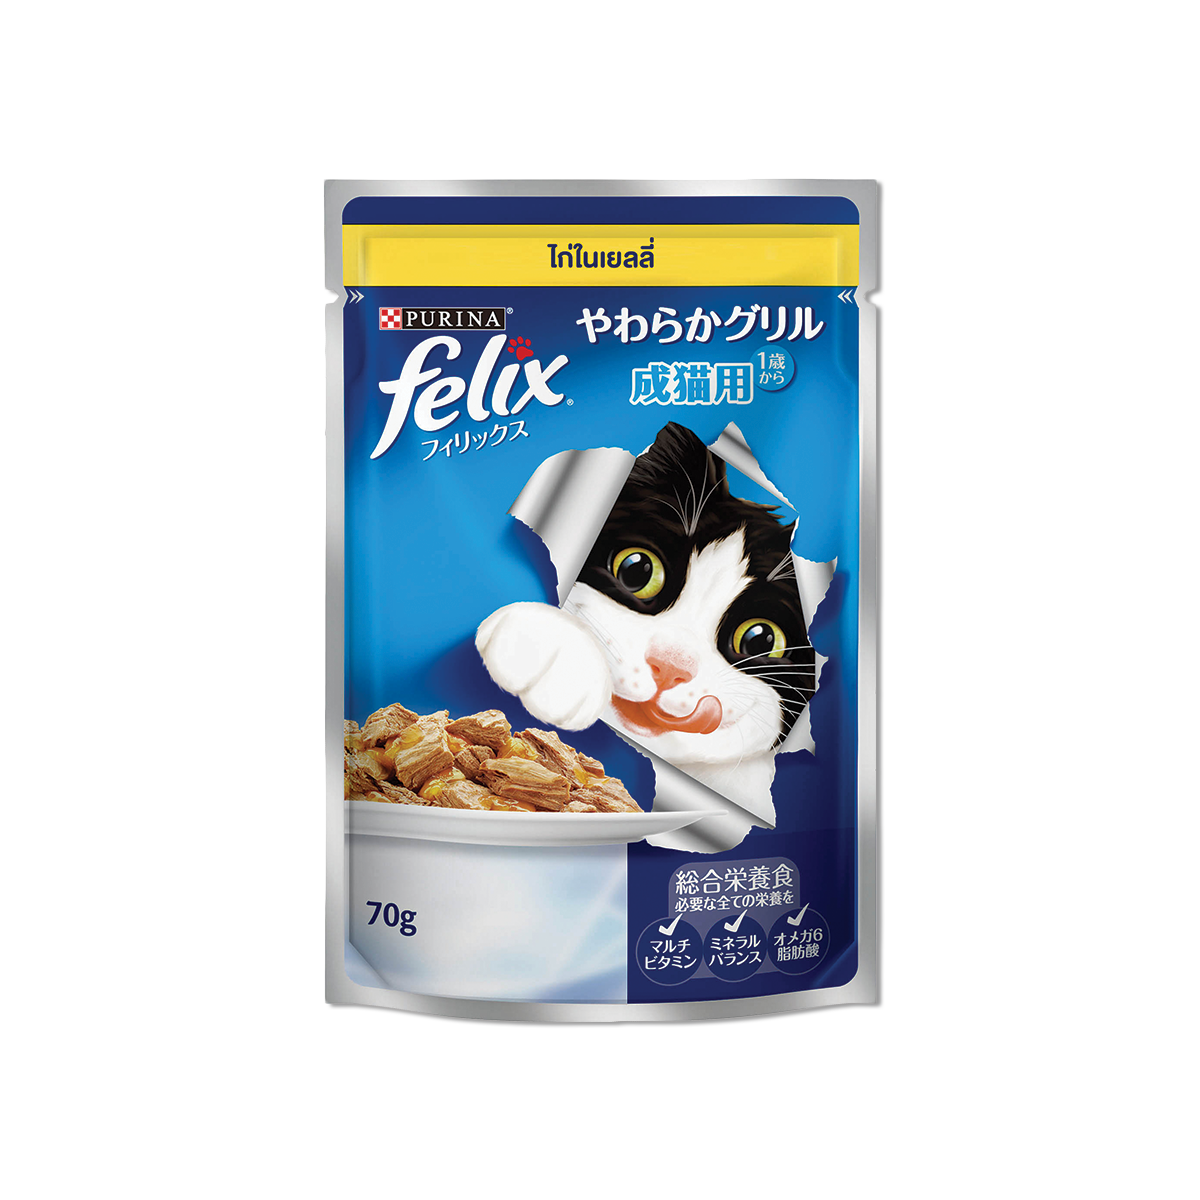 Felix-Chicken in Jelly (70g)